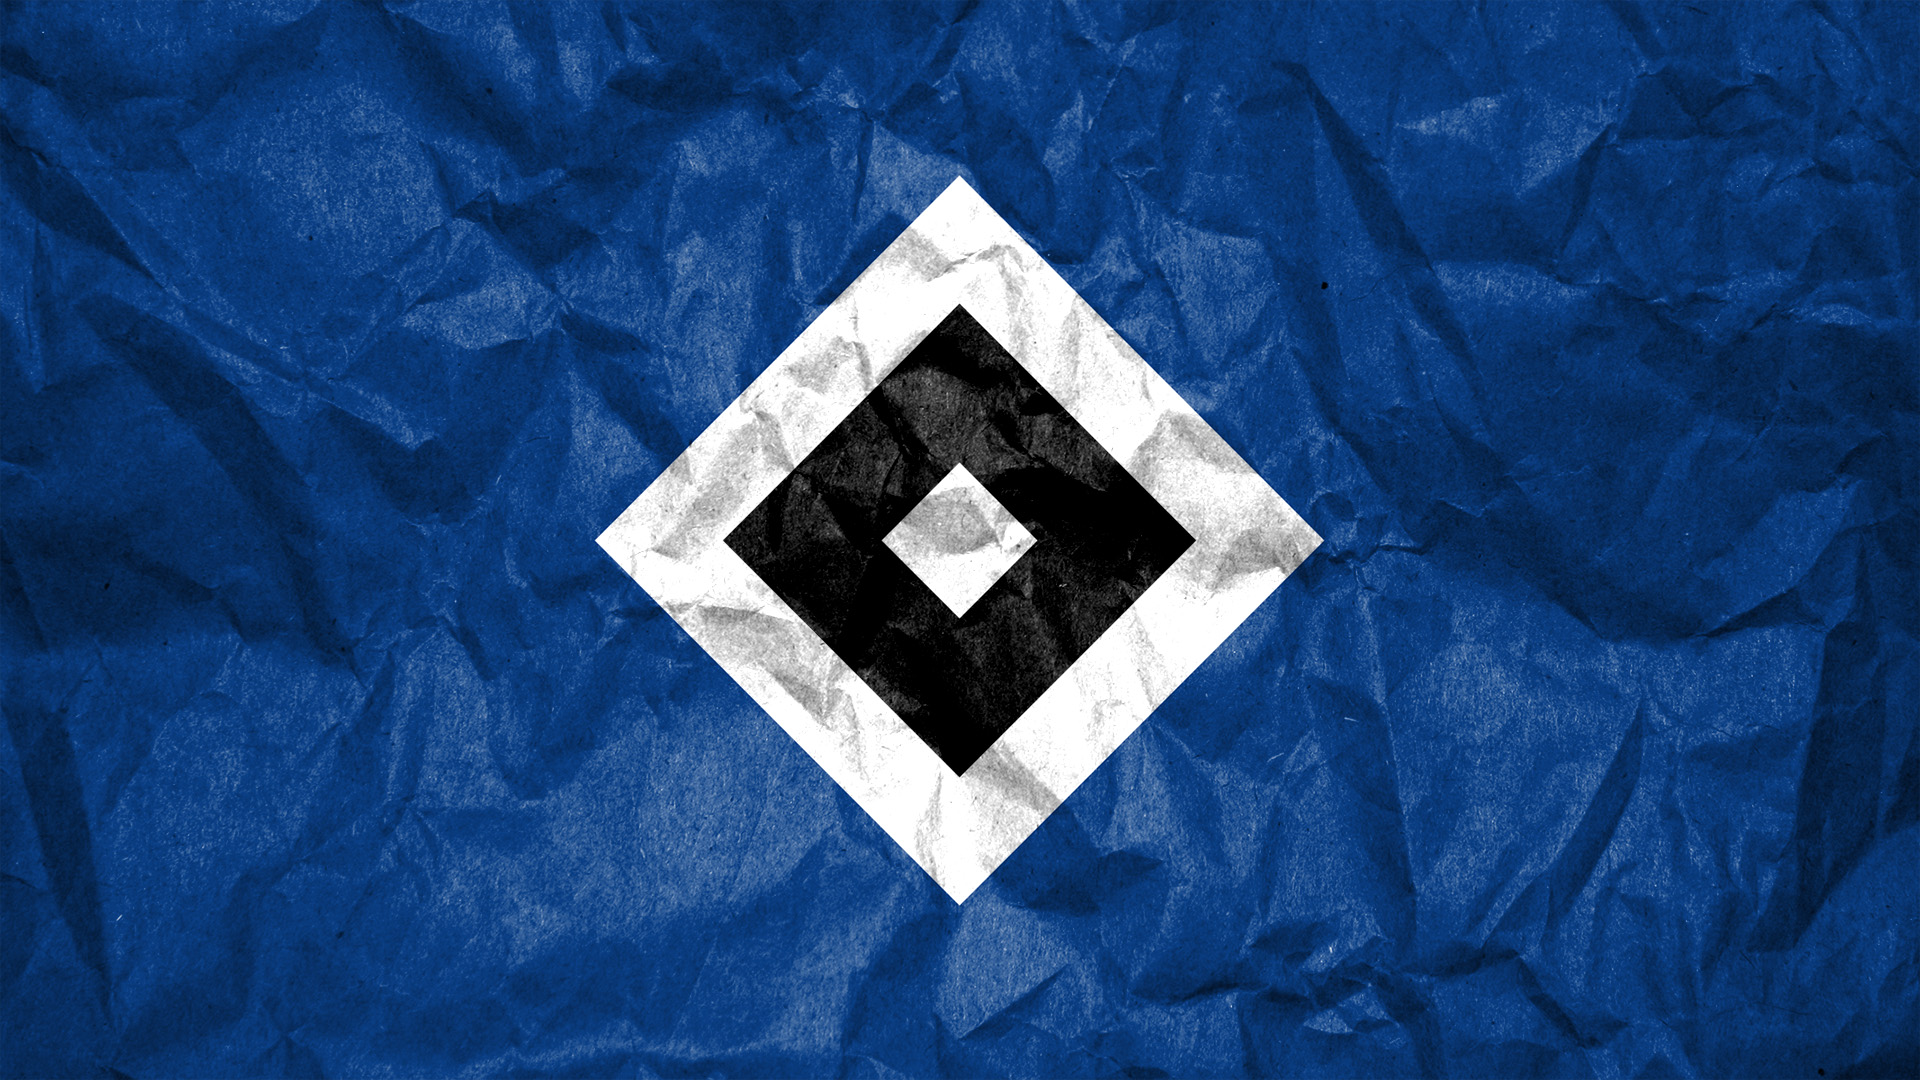 hsv壁紙,青い,コバルトブルー,エレクトリックブルー,パターン,フォント